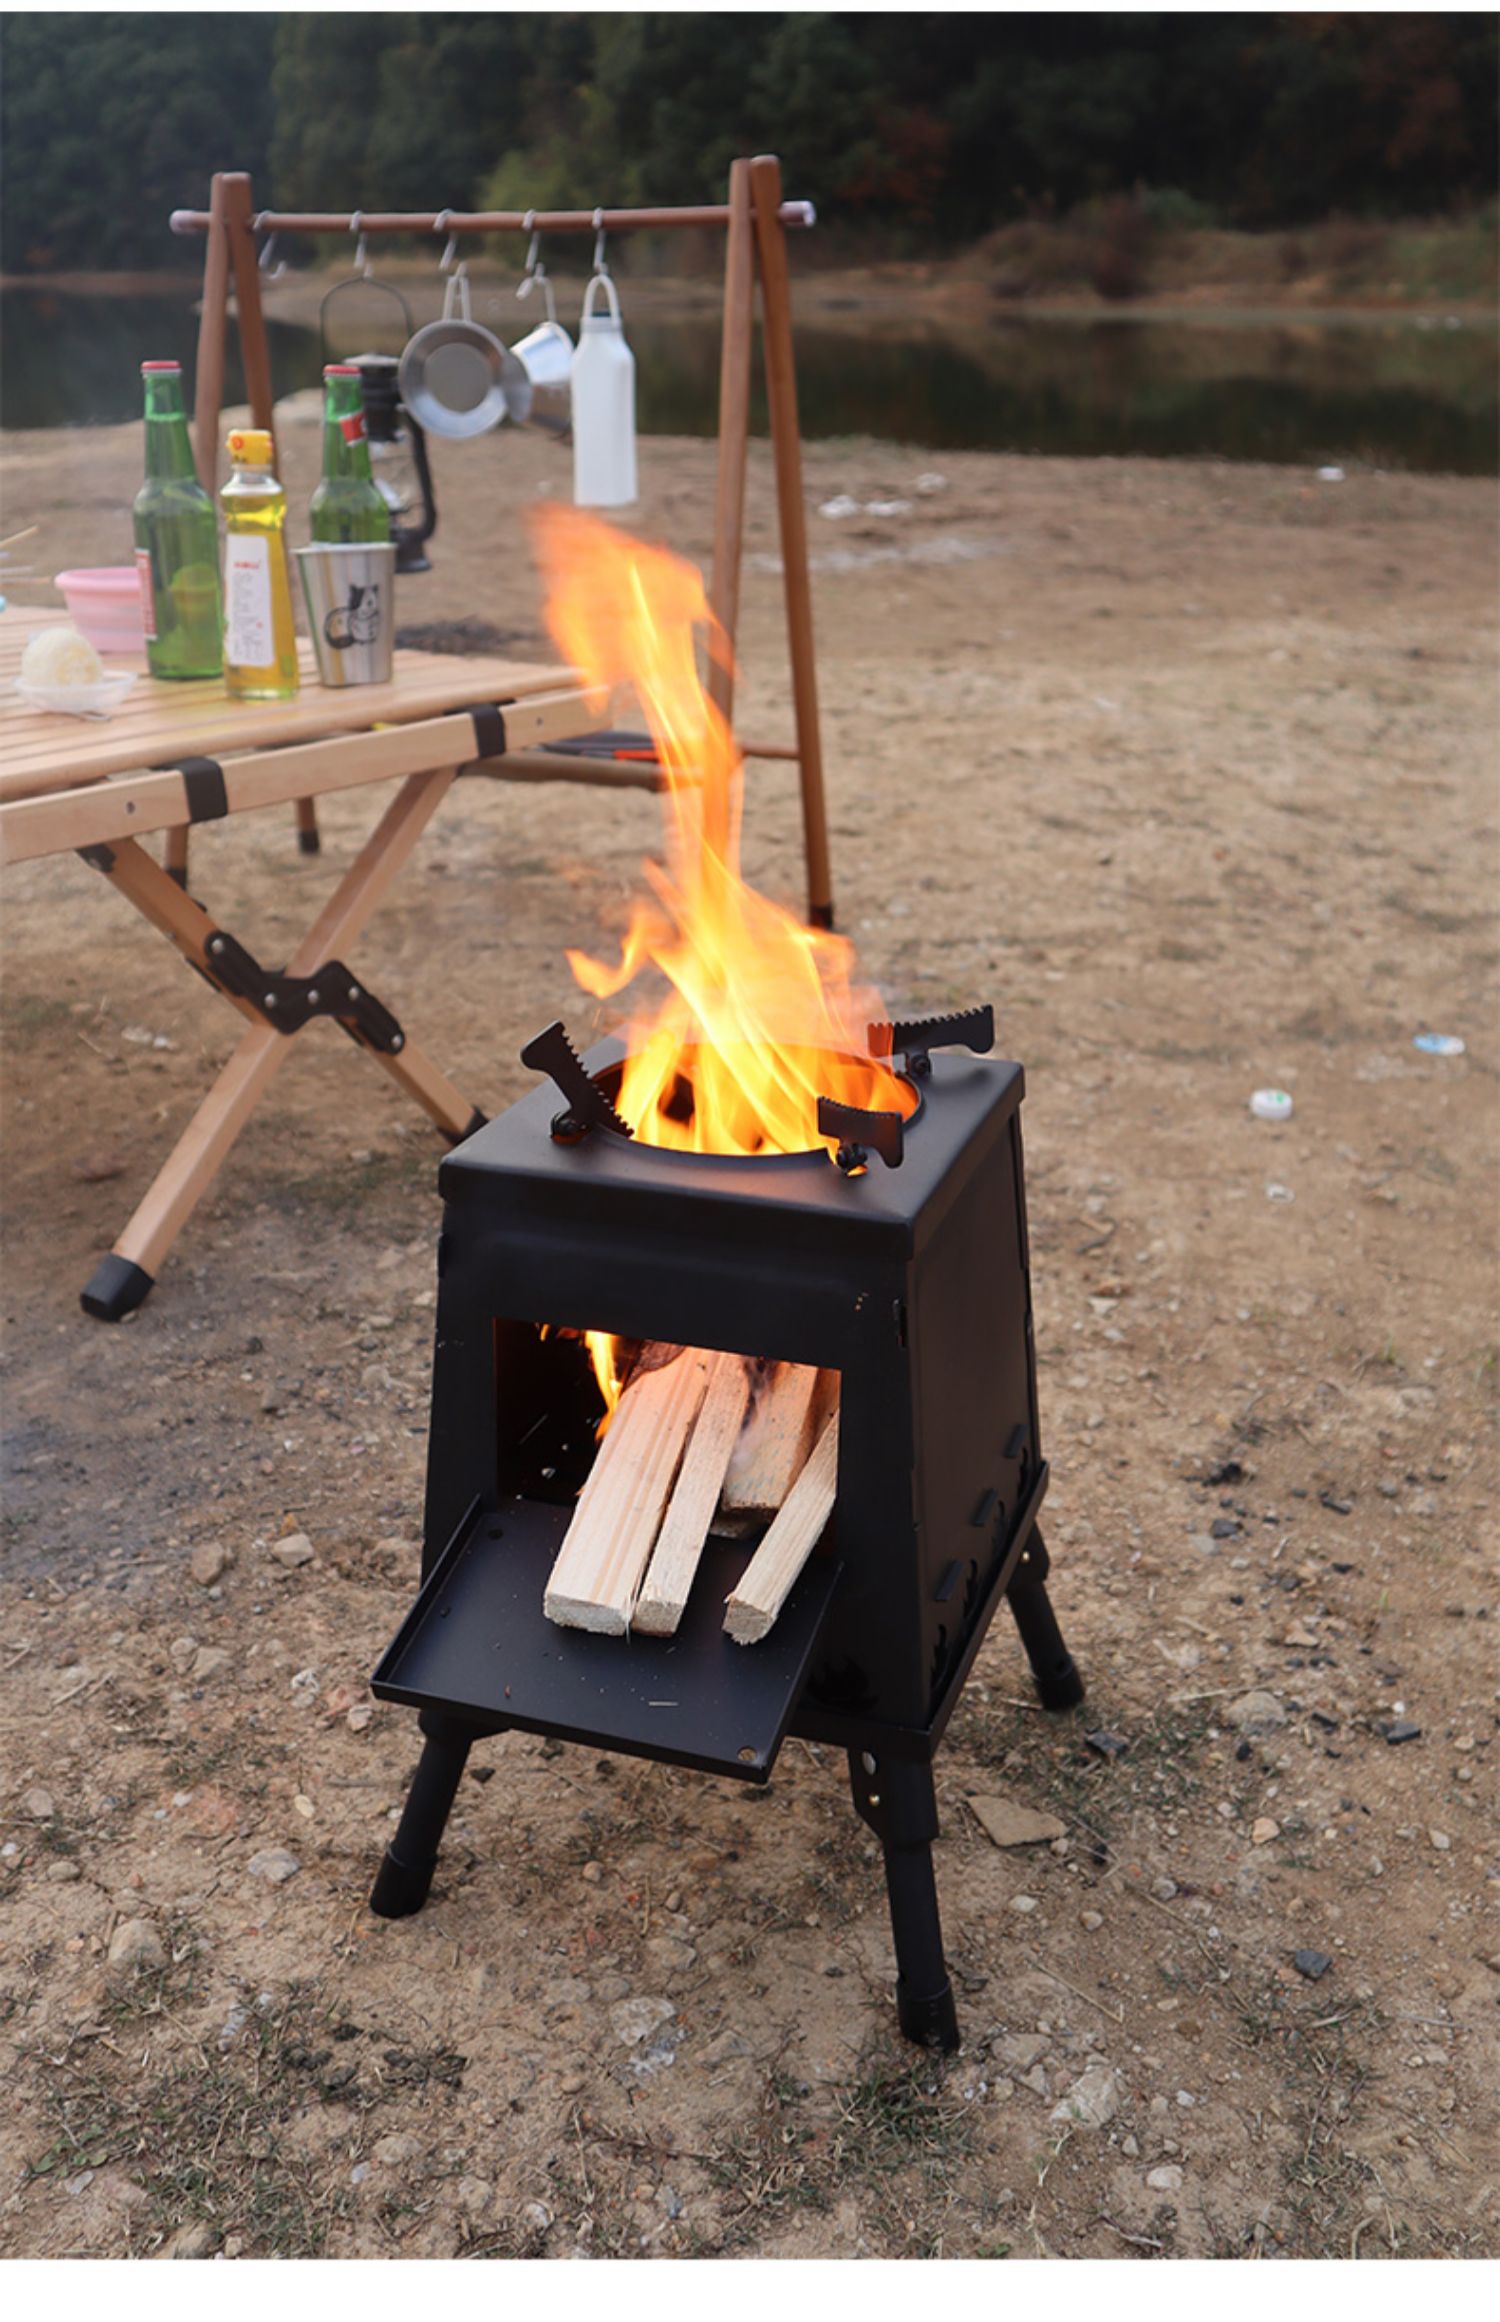 户外炉具火炉小型露营炉子便携式野炊装备网红野外野餐烧炊具 小号